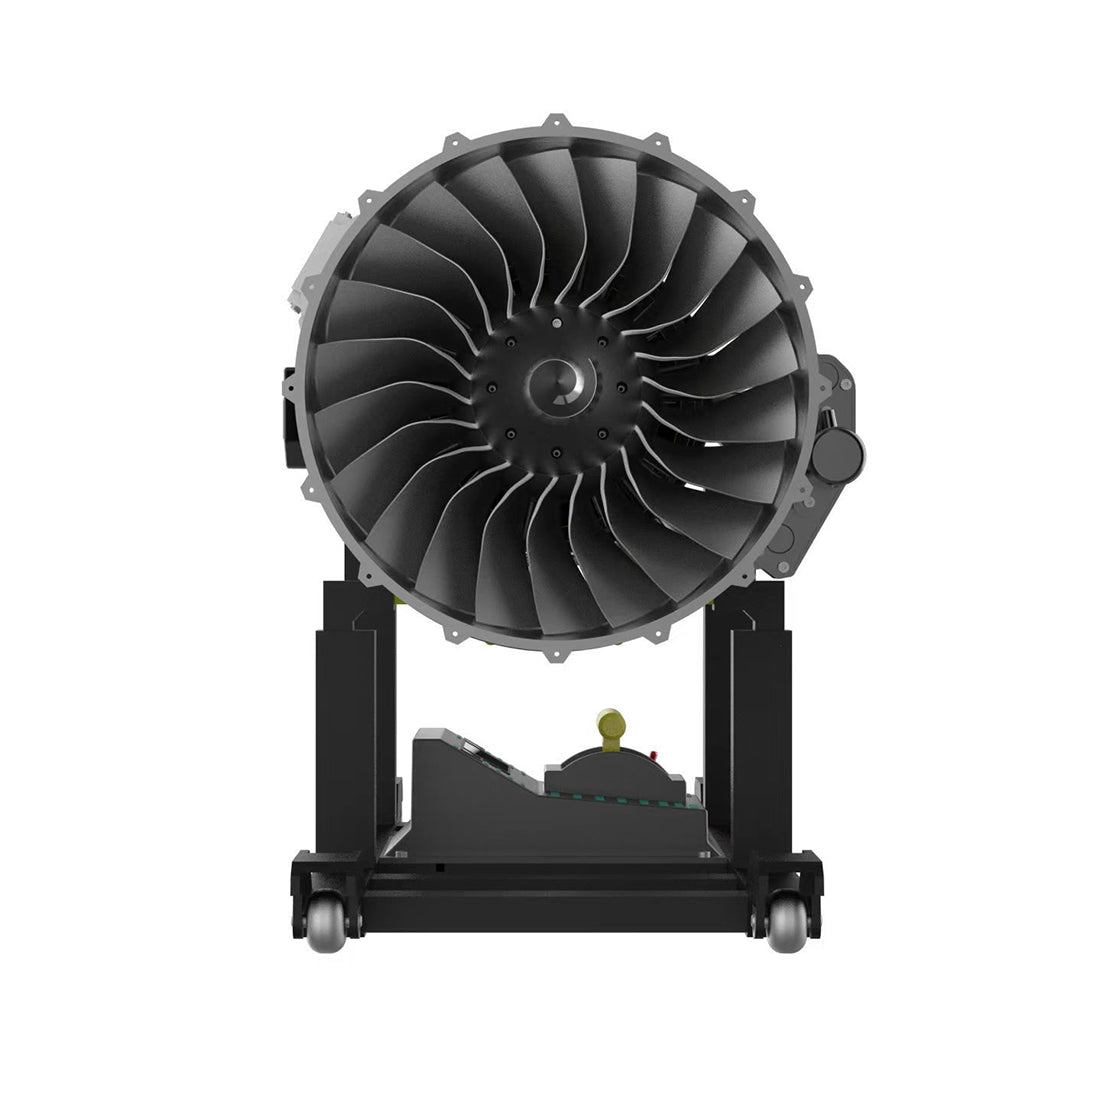 TECHING Modellbausatz für mechanisches Doppelspulen-Turbofan-Triebwerk –  enginediyshop